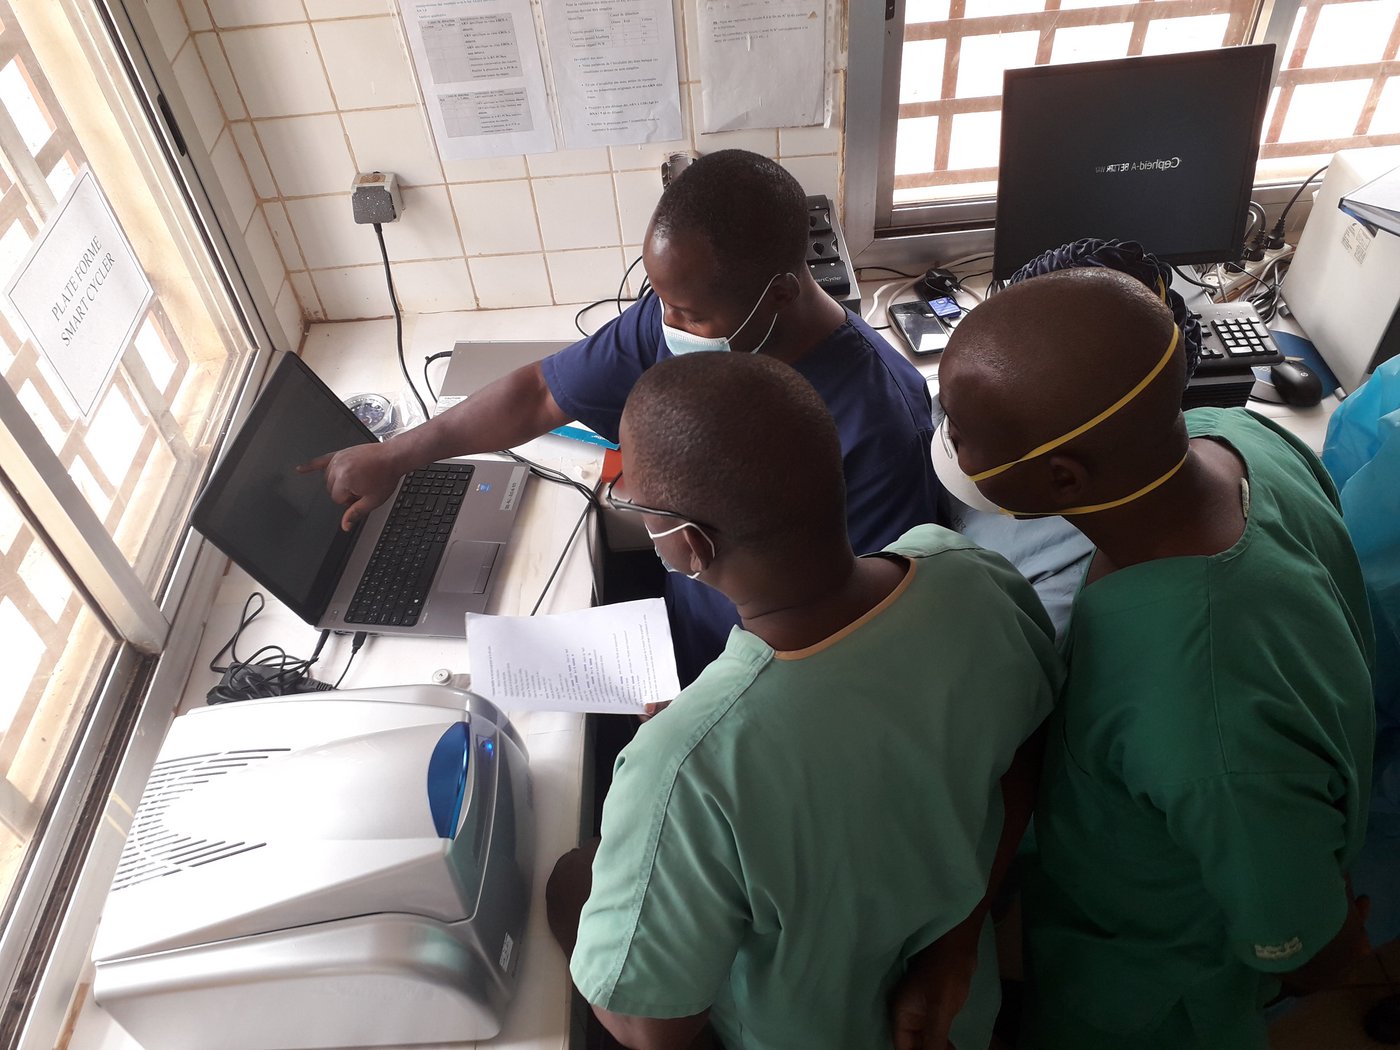 [Translate to English:] Das Bild zeigt drei afrikanische Forschende in einer Laborsituationvor einem Computer